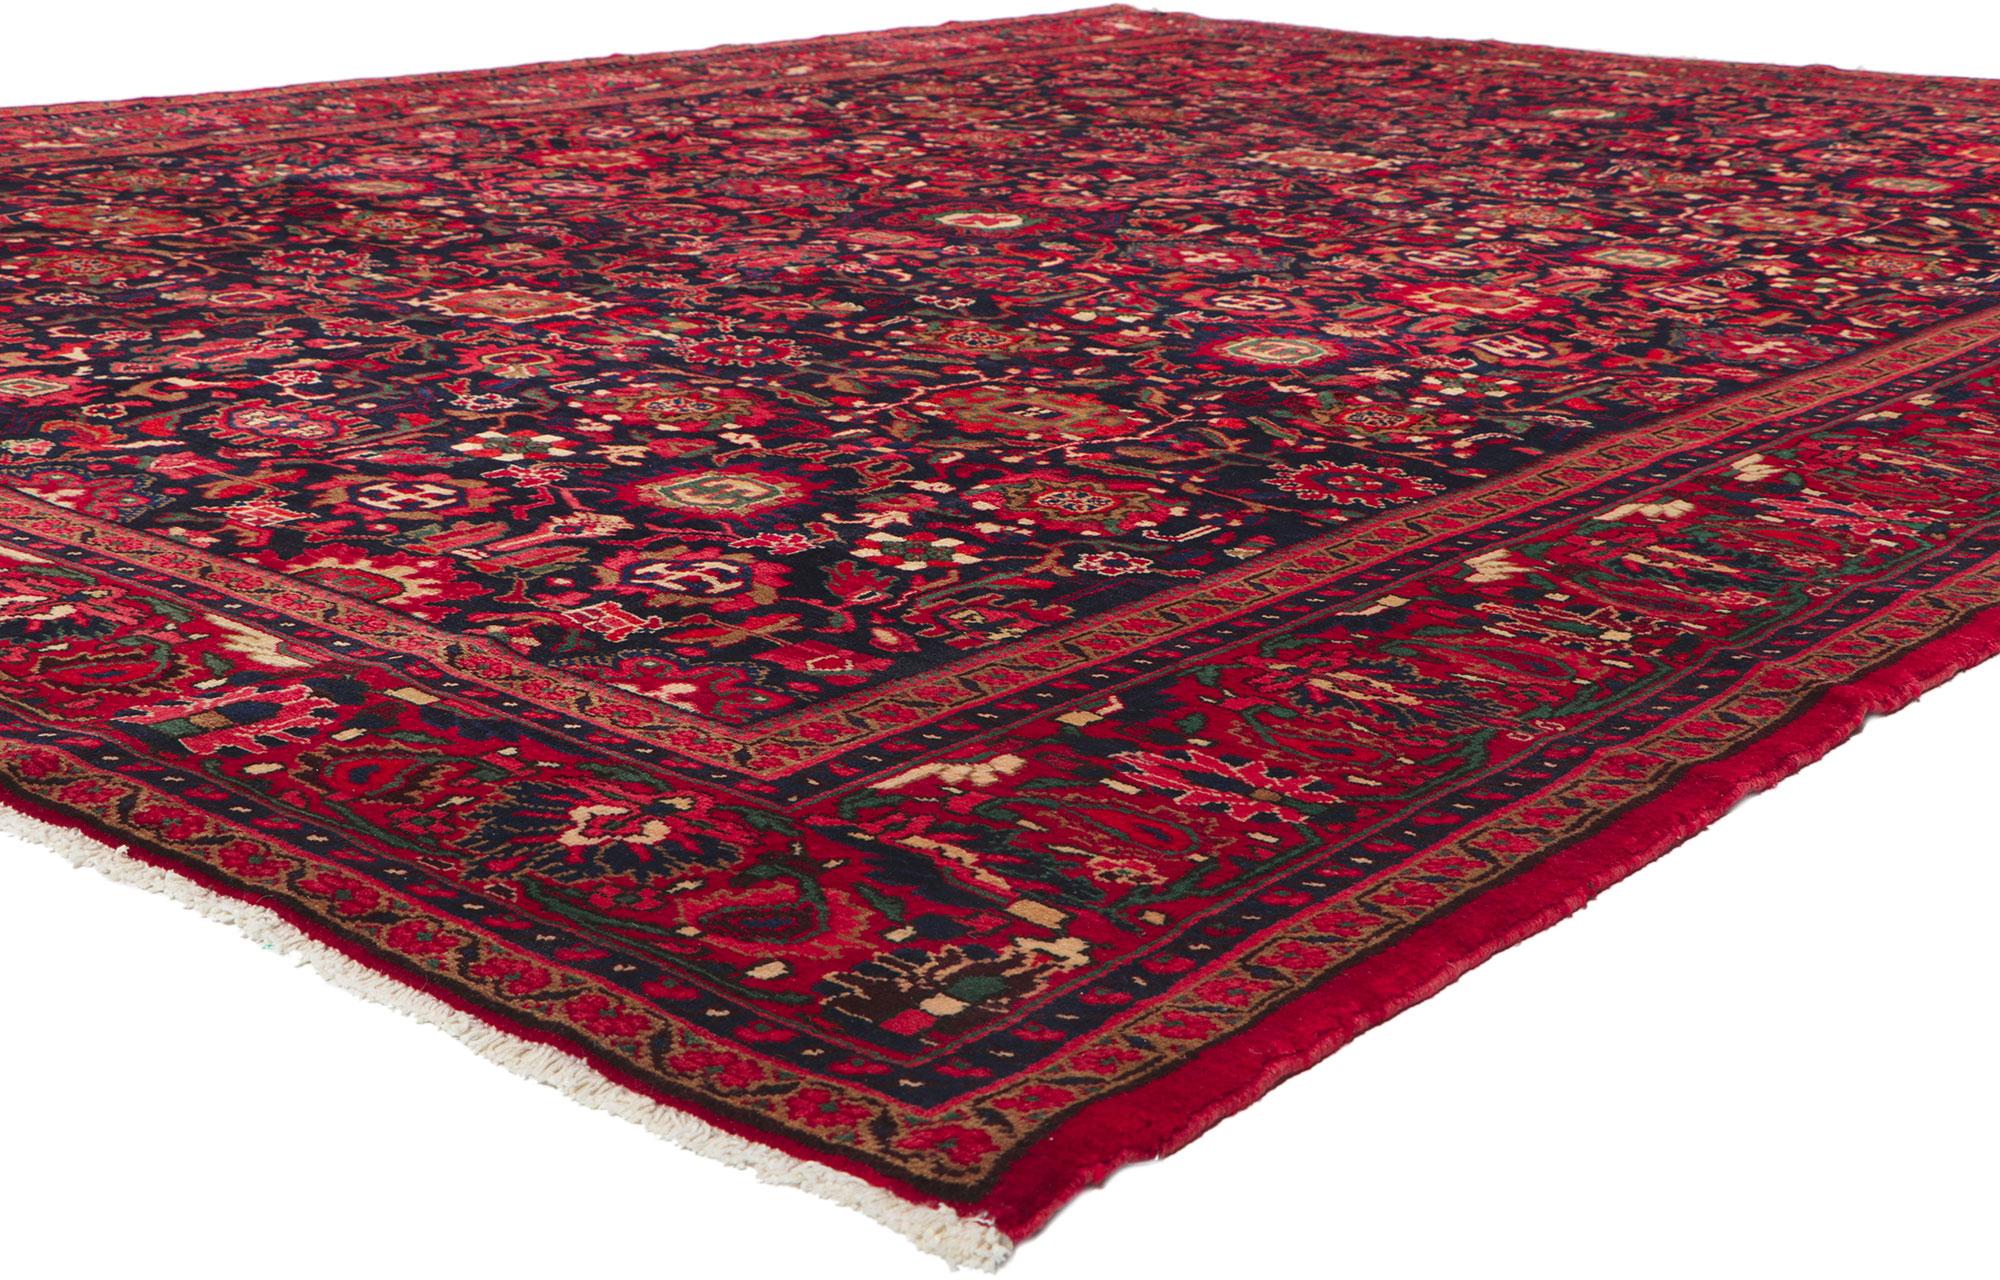 61145 Tapis persan vintage Malayer, 10'06 x 13'09. Design/One, d'un design intemporel et d'une beauté séduisante aux couleurs saturées, ce tapis persan vintage en laine nouée à la main, Malayer, est prêt à impressionner. Un motif botanique répétitif